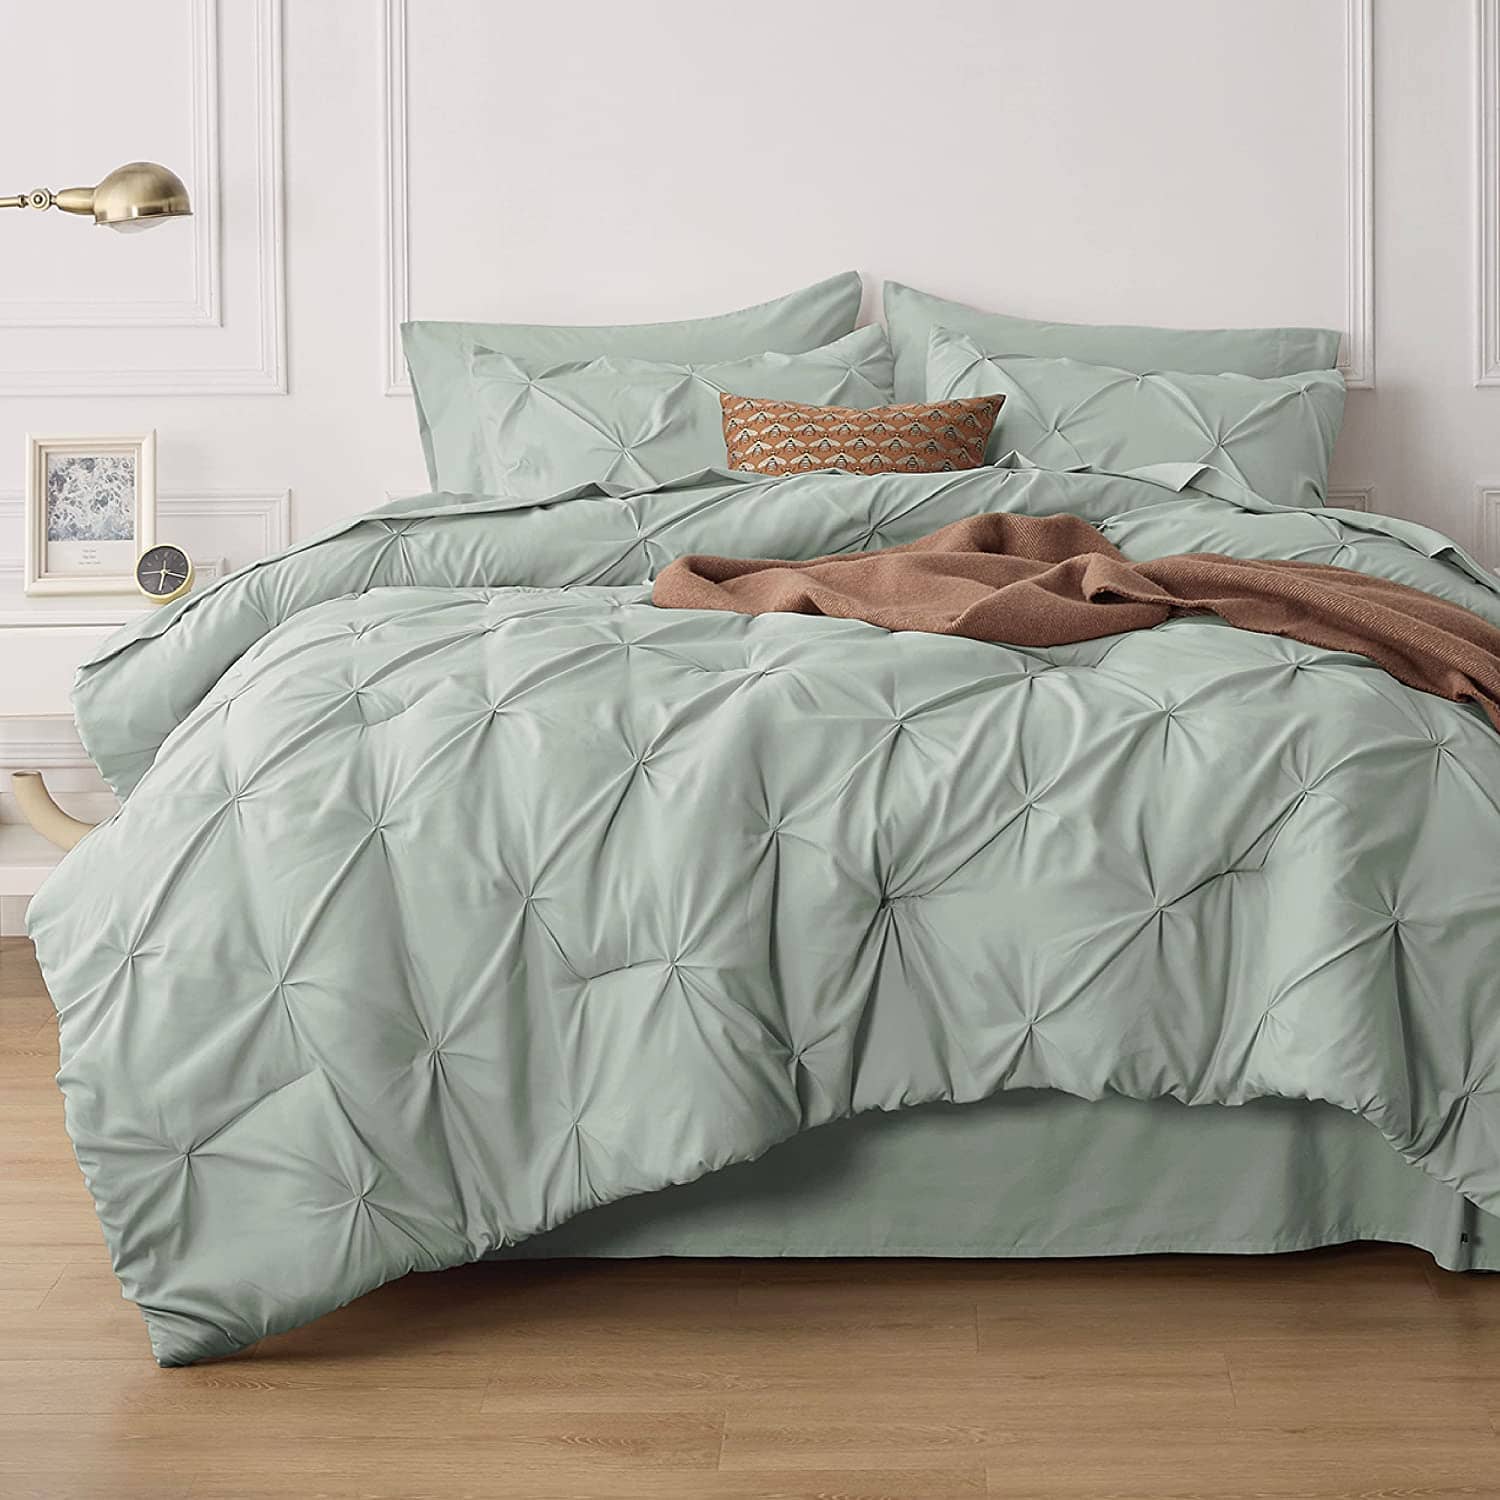 Bedsure Dorm Bedding Twin Comforter Set - 5 Pieces Pintuck Bed in